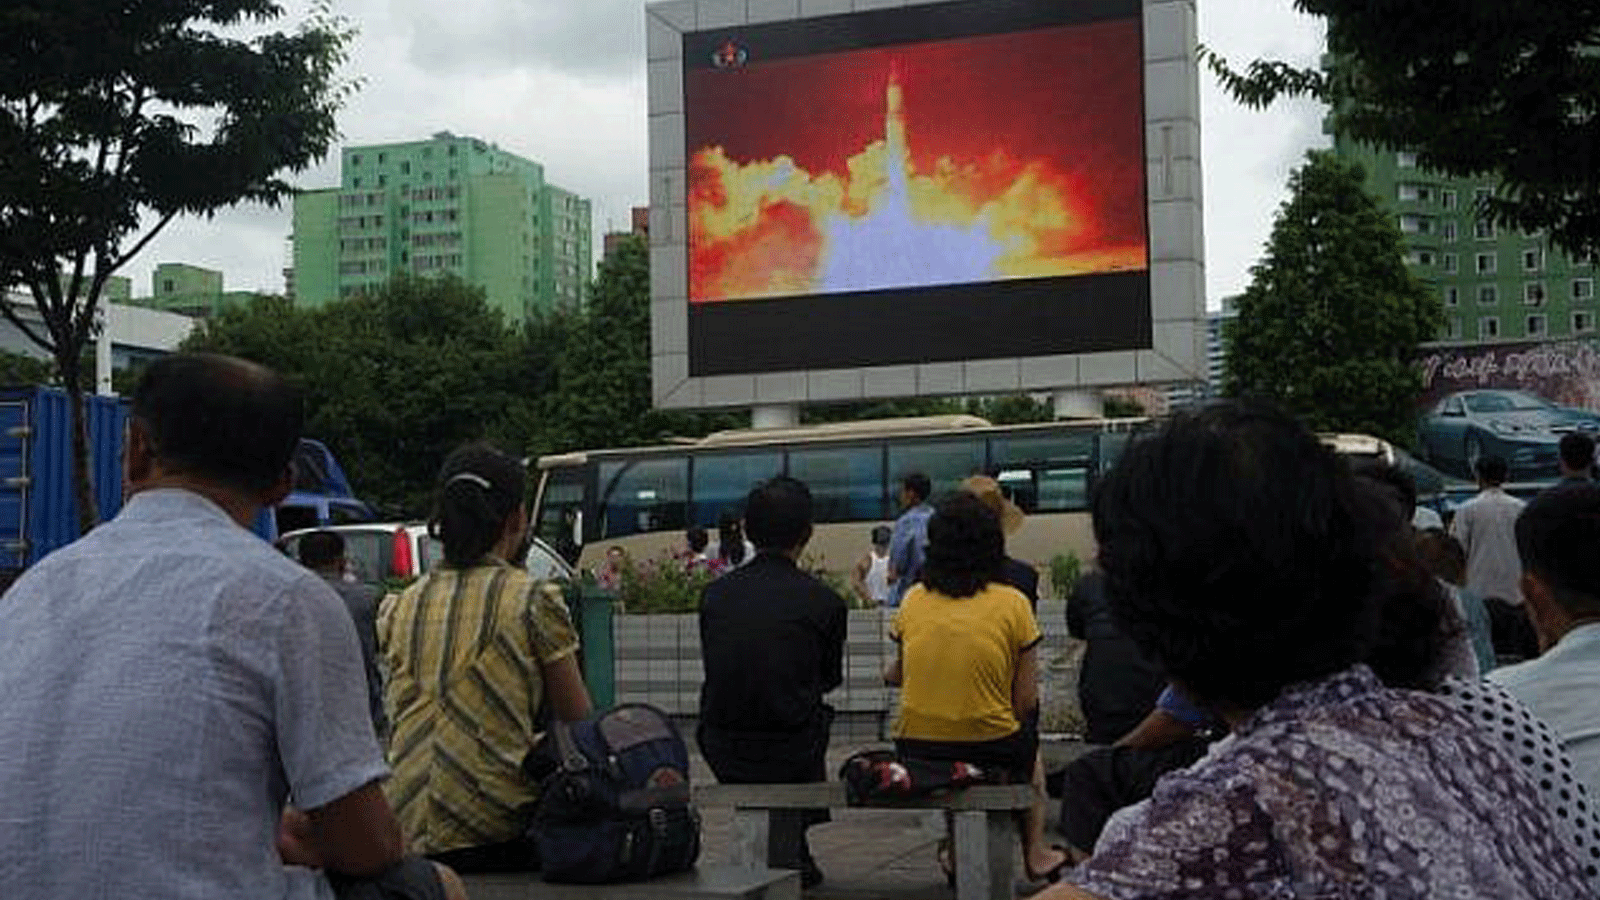 مواطنون يشاهدون تغطية تلفزيونية لتجربة صاروخ باليستي عابر للقارات معروضة على شاشة في ساحة عامة في بيونغ يانغ ، 29 يوليو/ تموز 2017.